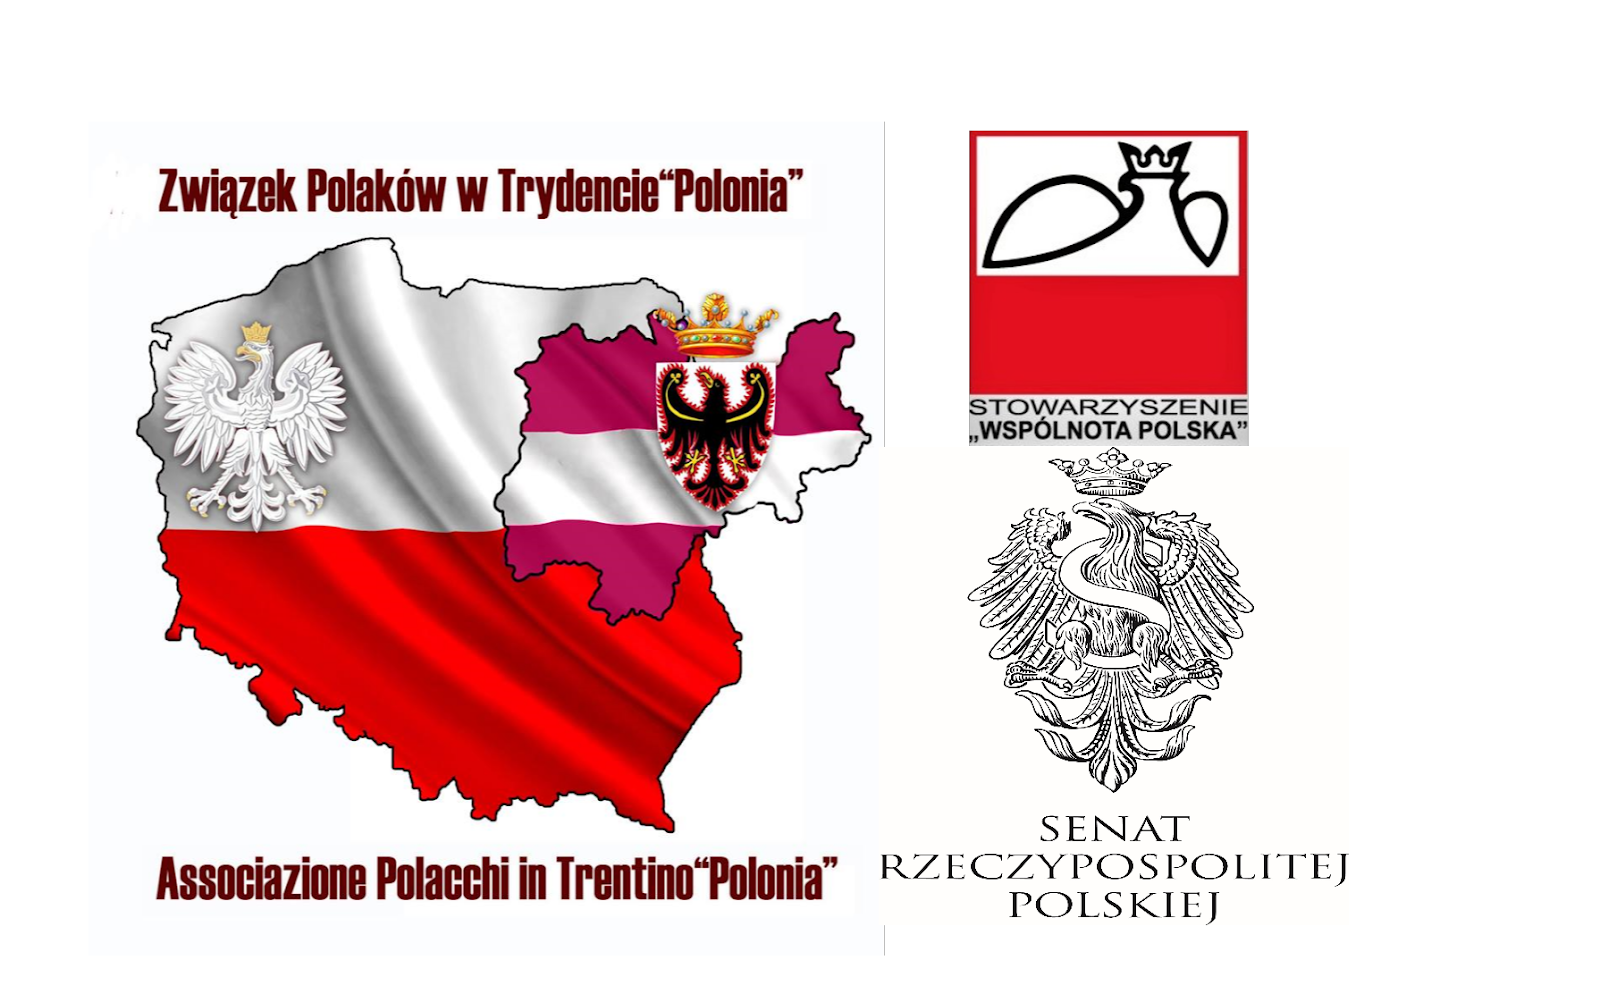 Associazione dei Polacchi in  Trentino - Związek Polaków w Trydencie - POLONIA